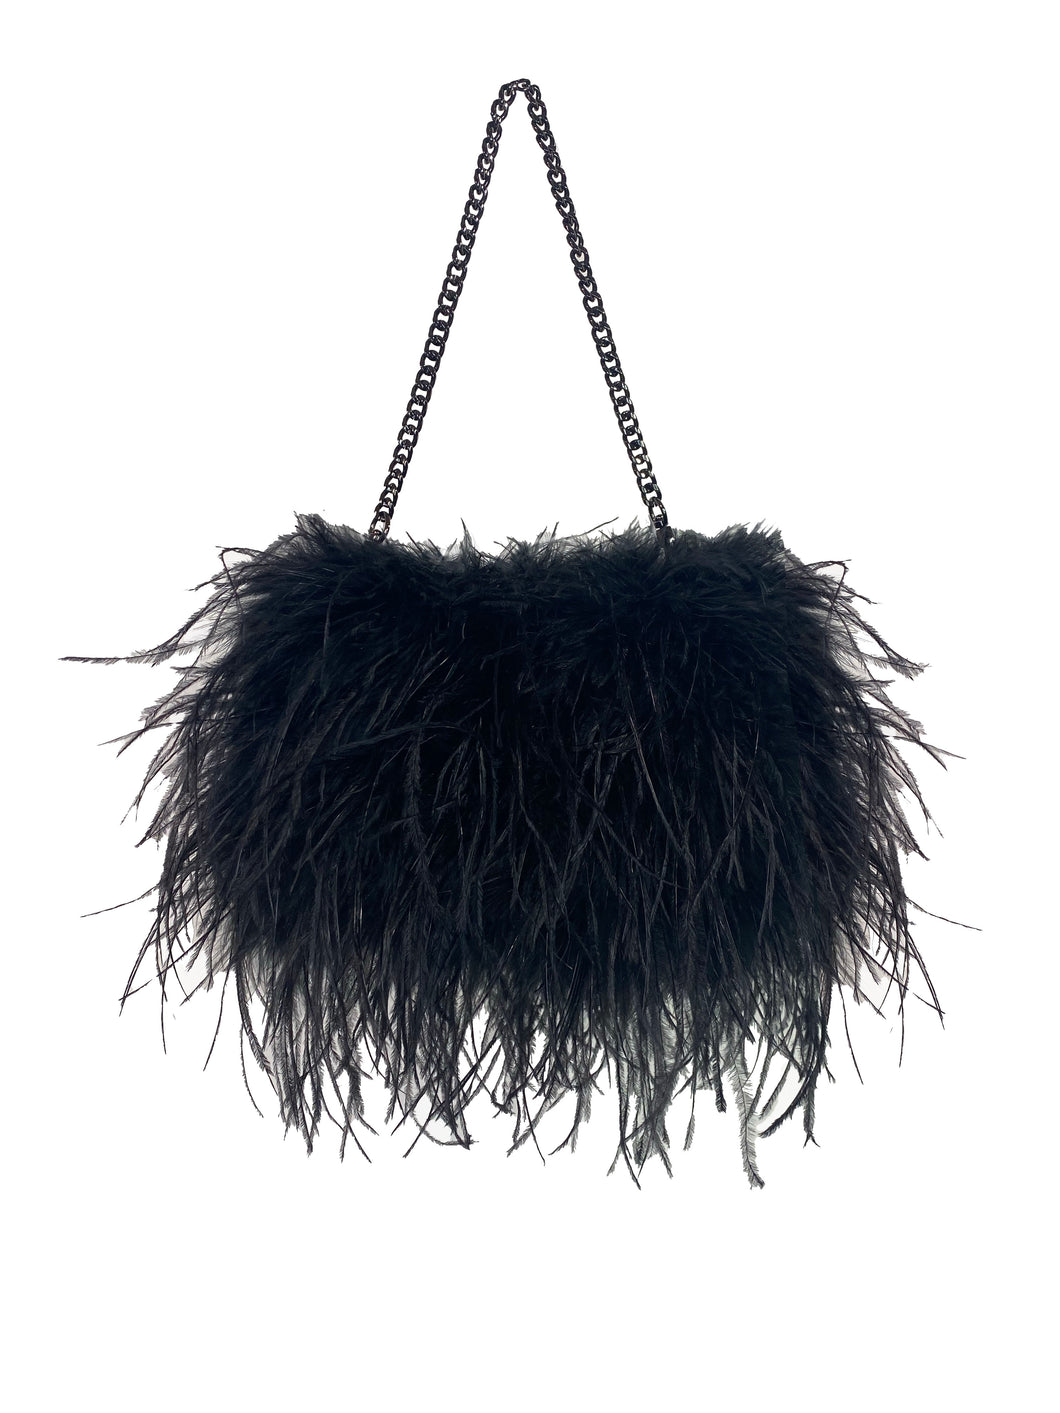 Black Mini Ostrich Feather Bag